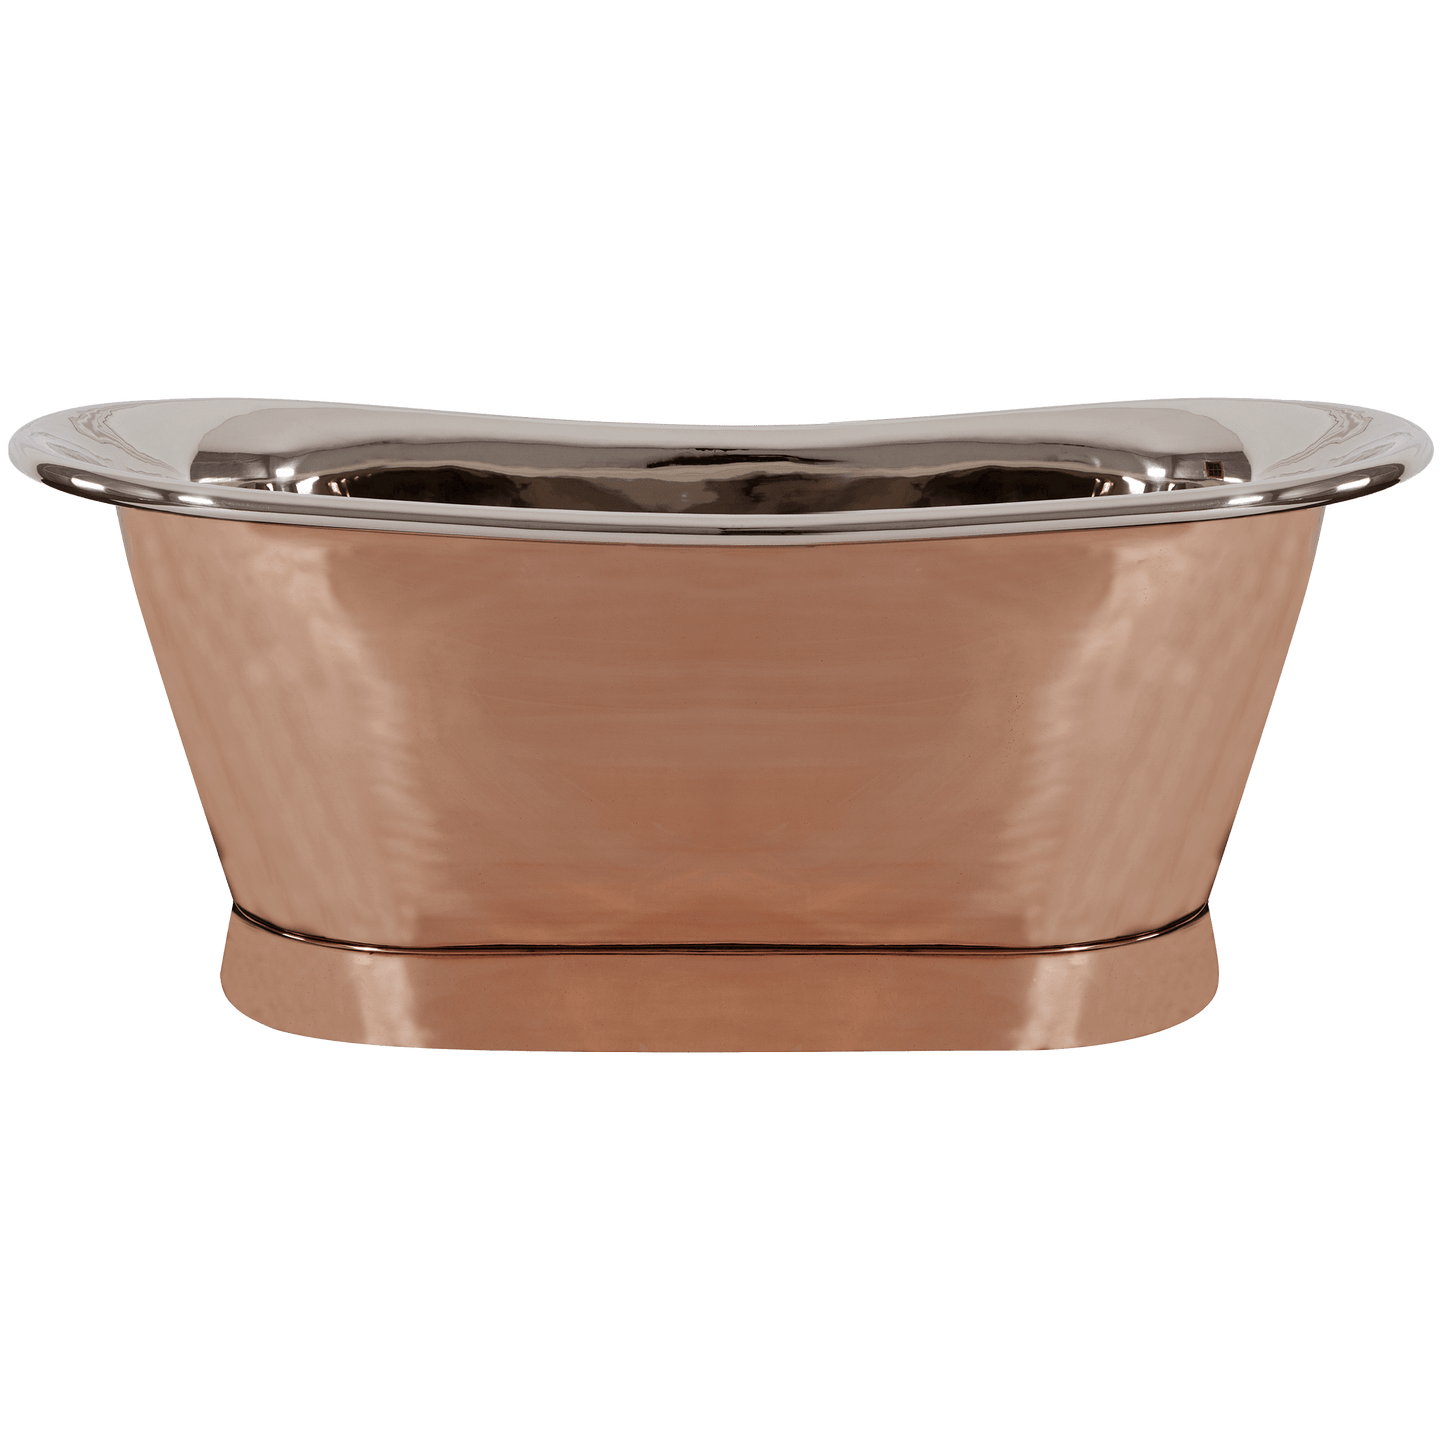 Nickel & Copper Bateau Style Roll Top Bathtub